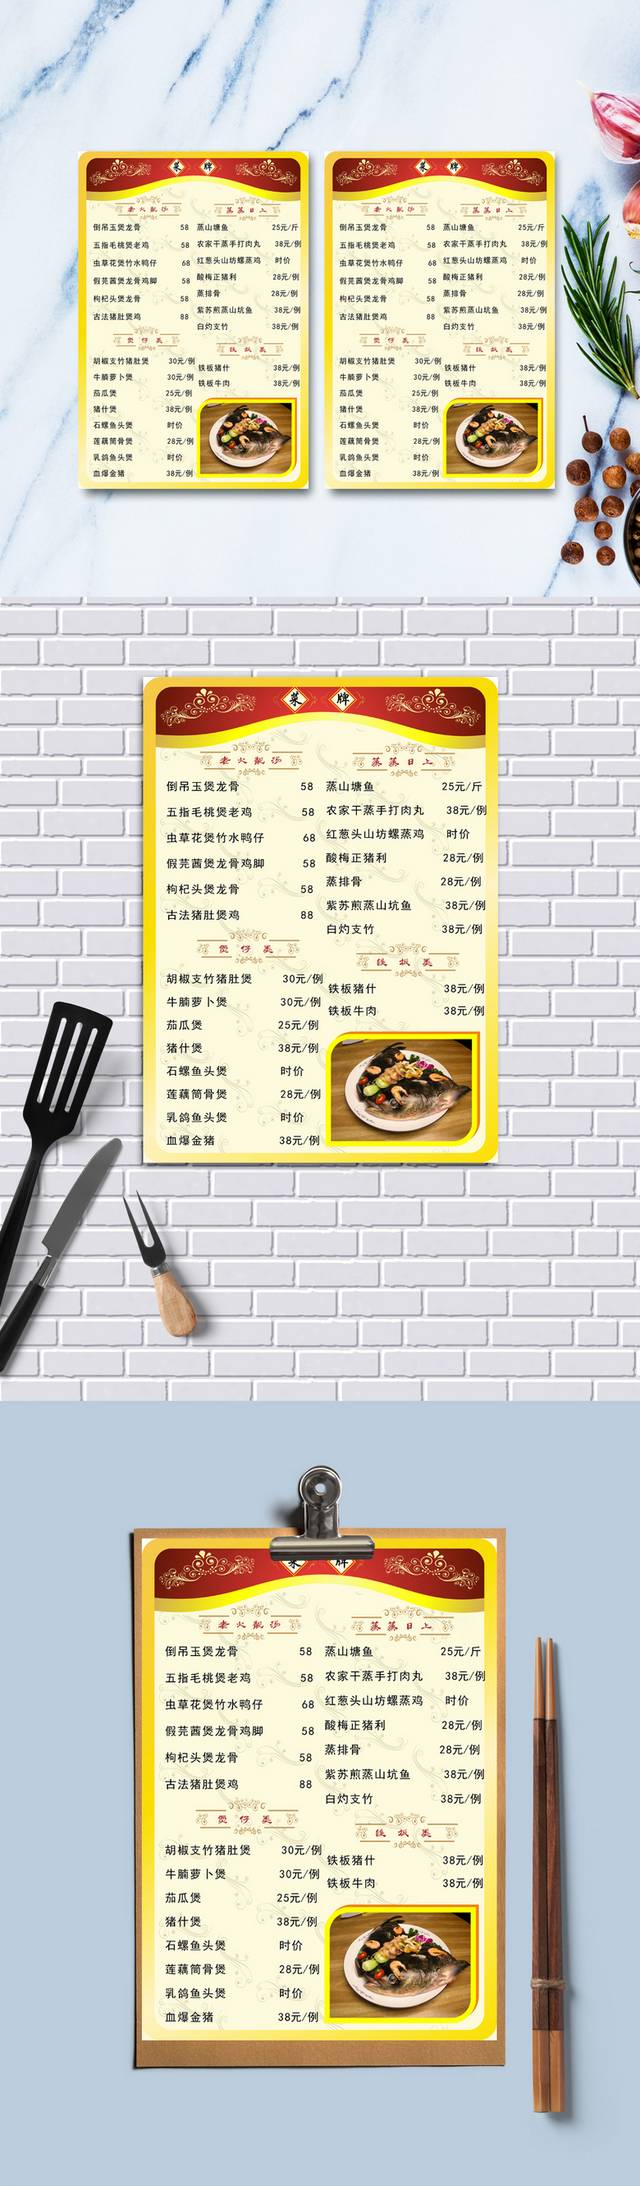 高清经典特色餐馆菜单模板设计